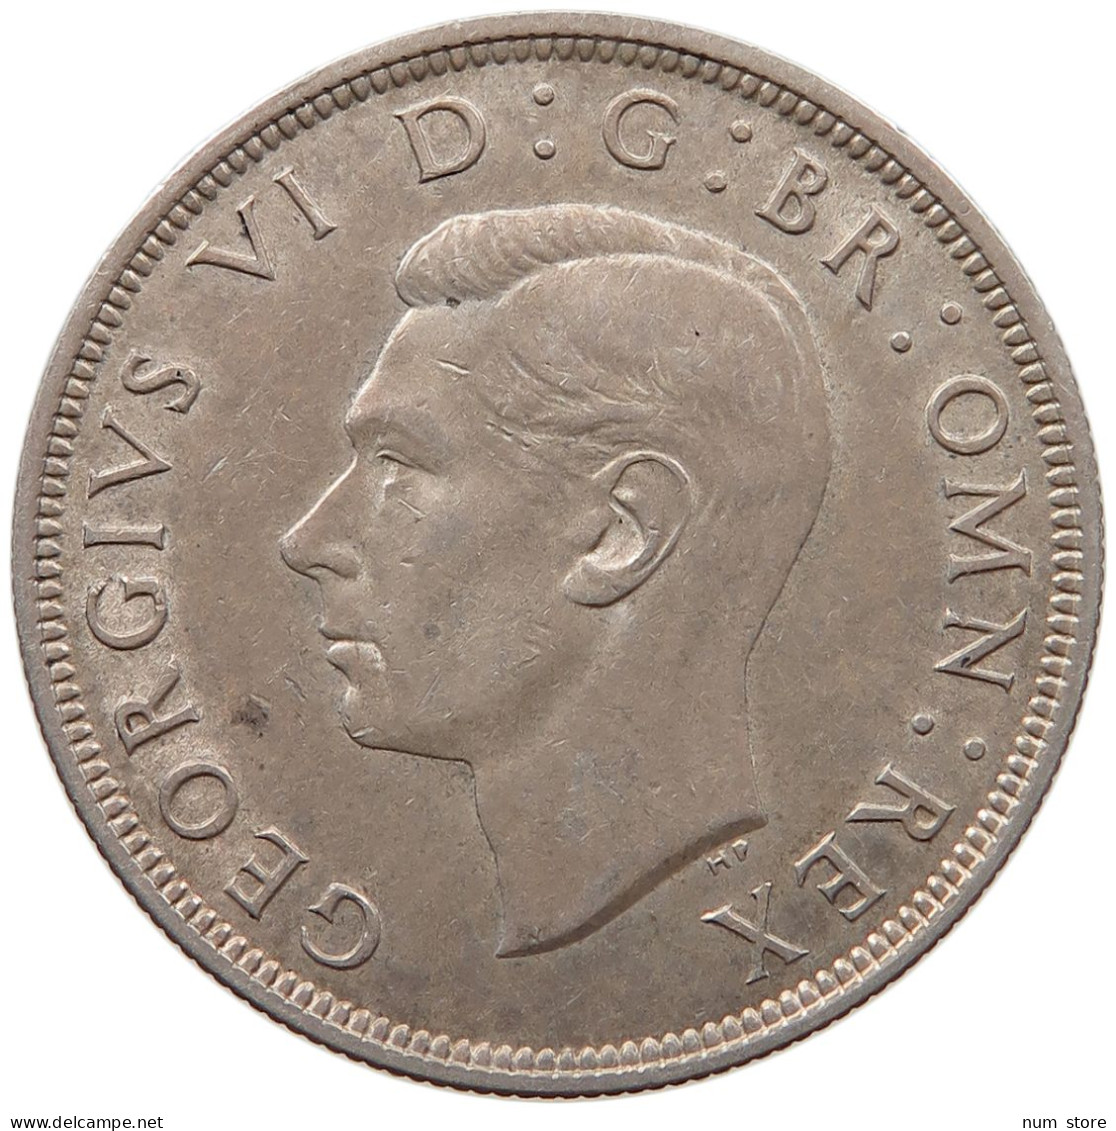 GREAT BRITAIN HALF CROWN 1938 George VI. (1936-1952) #s031 0033 - K. 1/2 Crown